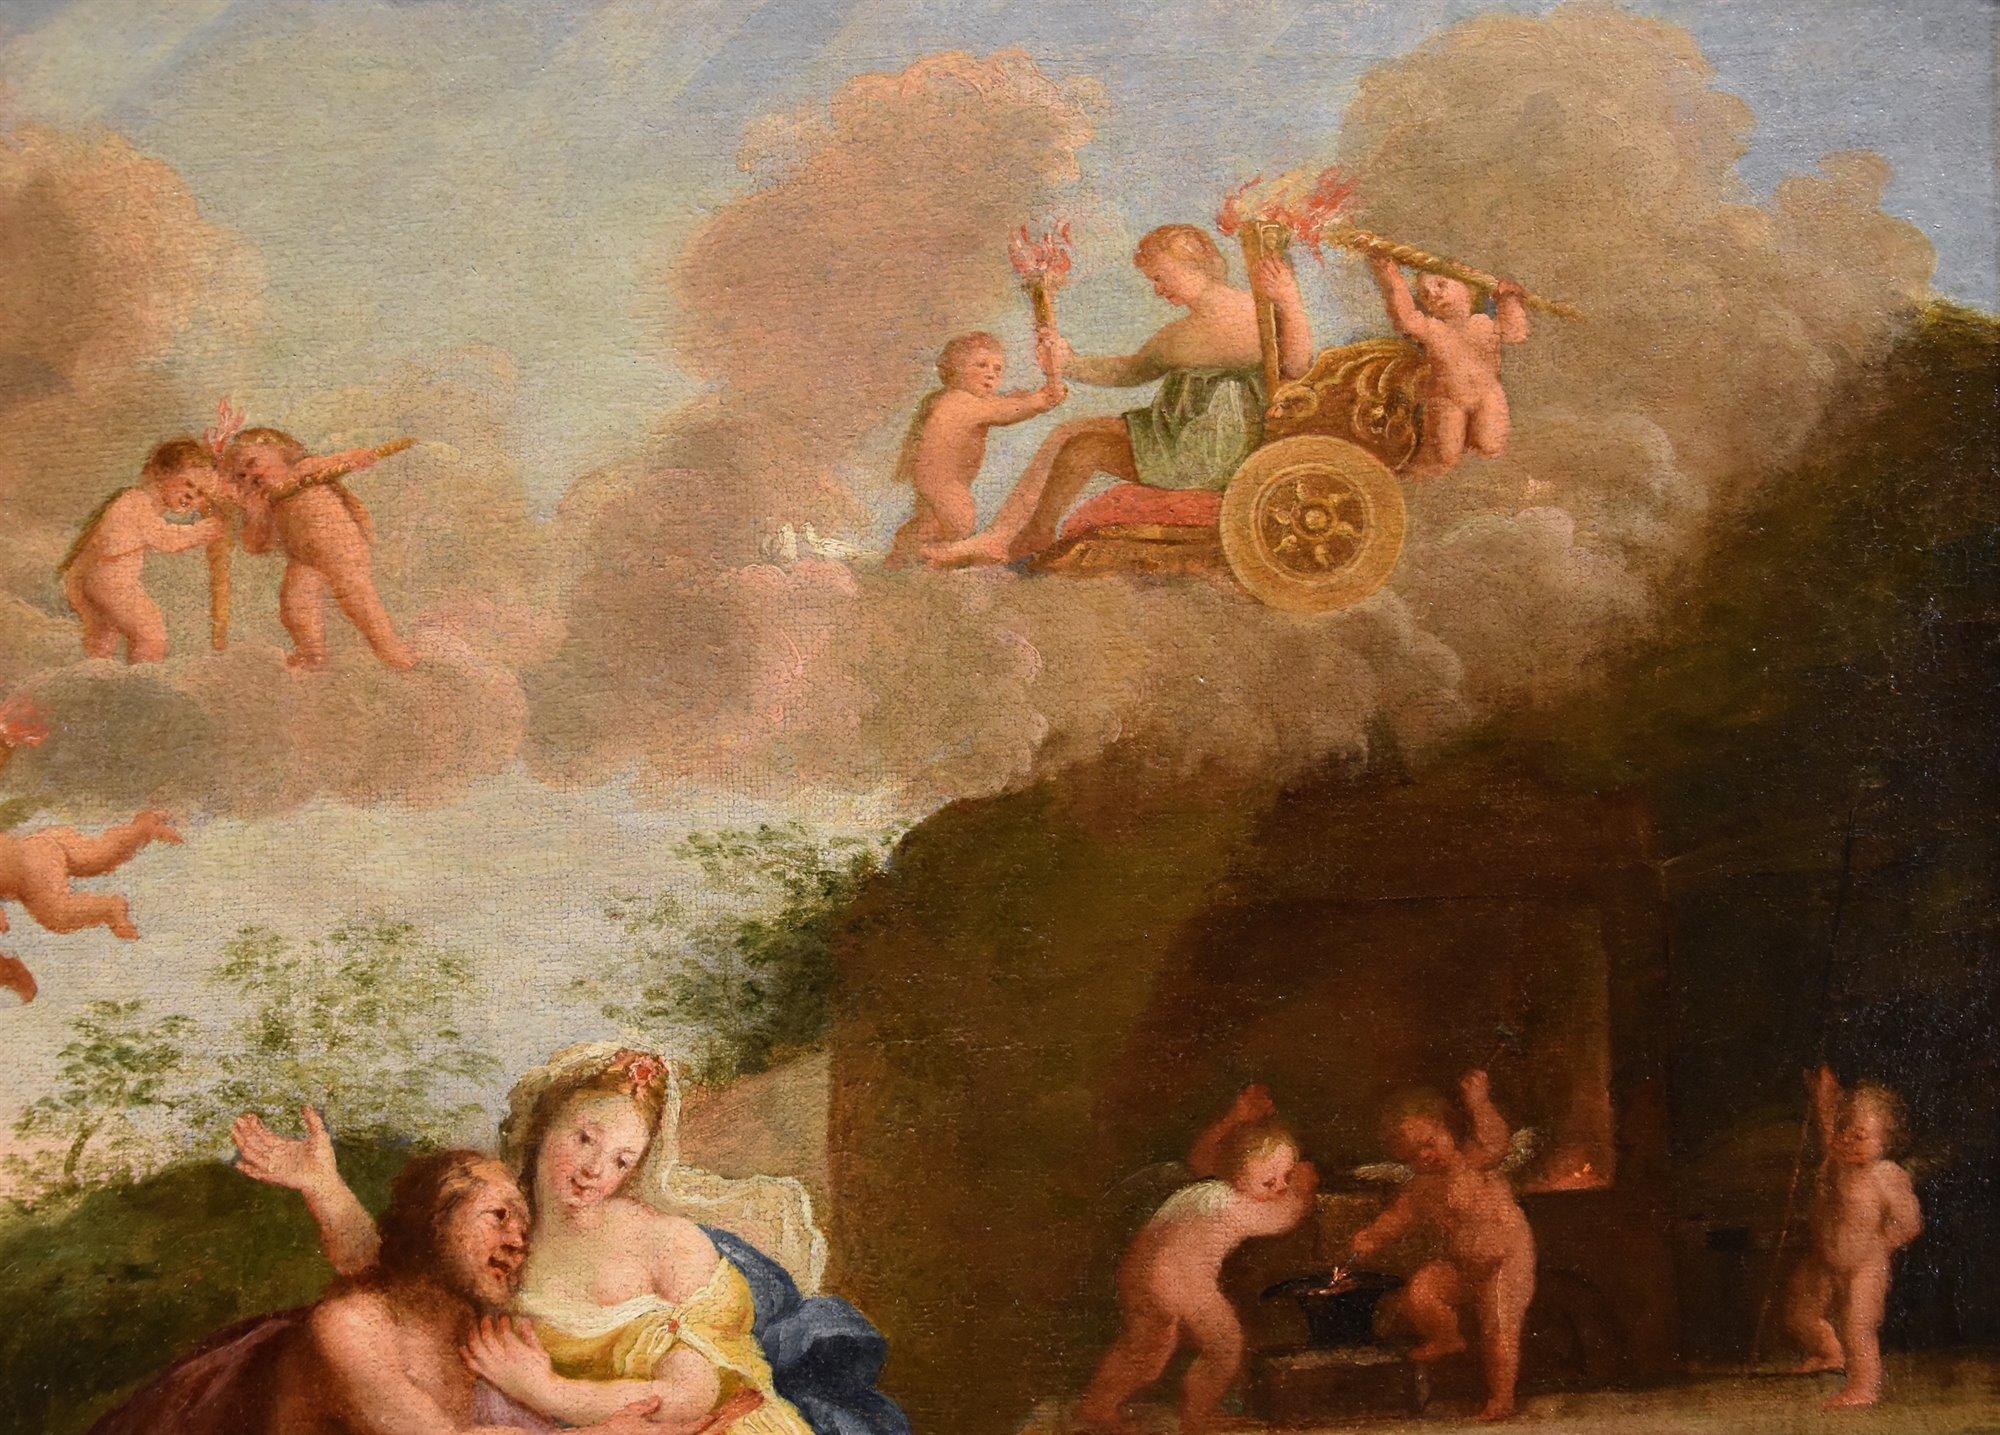 Mars Venus Albani Paint Oil on canvas 17th Century Old master Mythological For Sale 2